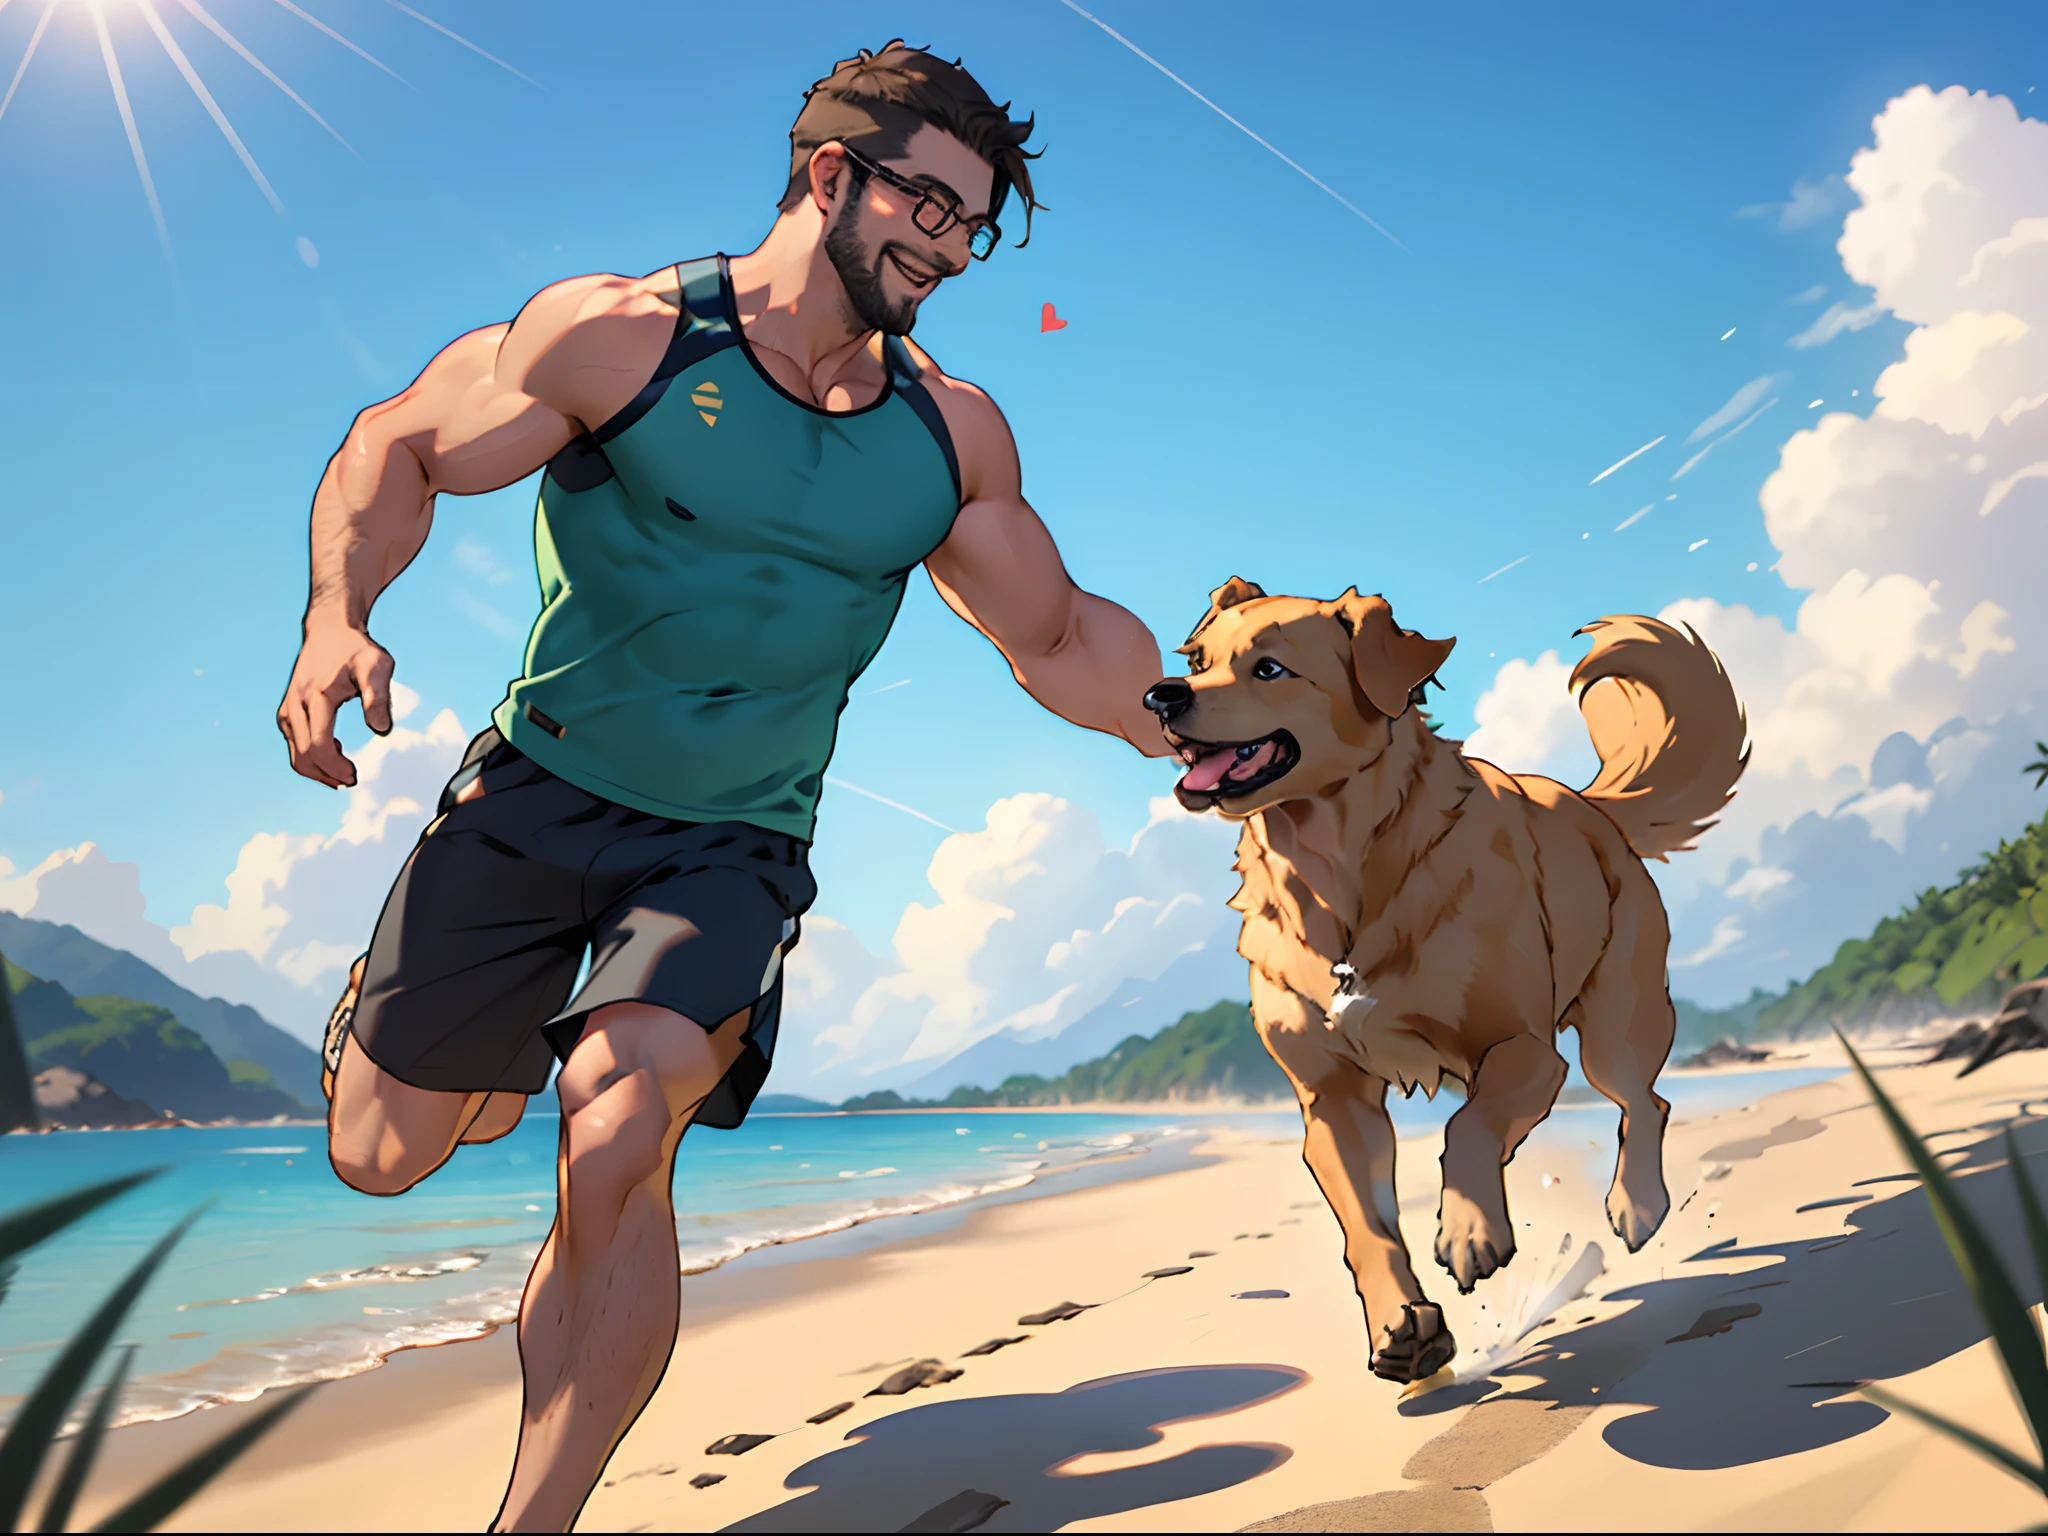 수염을 기른 남자와 골든 리트리버 개, 안경을 쓴 남자, 녹색 탱크톱, 해변가에서, 개와 함께 달리는 남자, 높고 상세한, 전신샷, 행복한 미소, 행복한 개, 마음이 따뜻해지는 순간, 파란 하늘, 햇빛, 옆에서 본